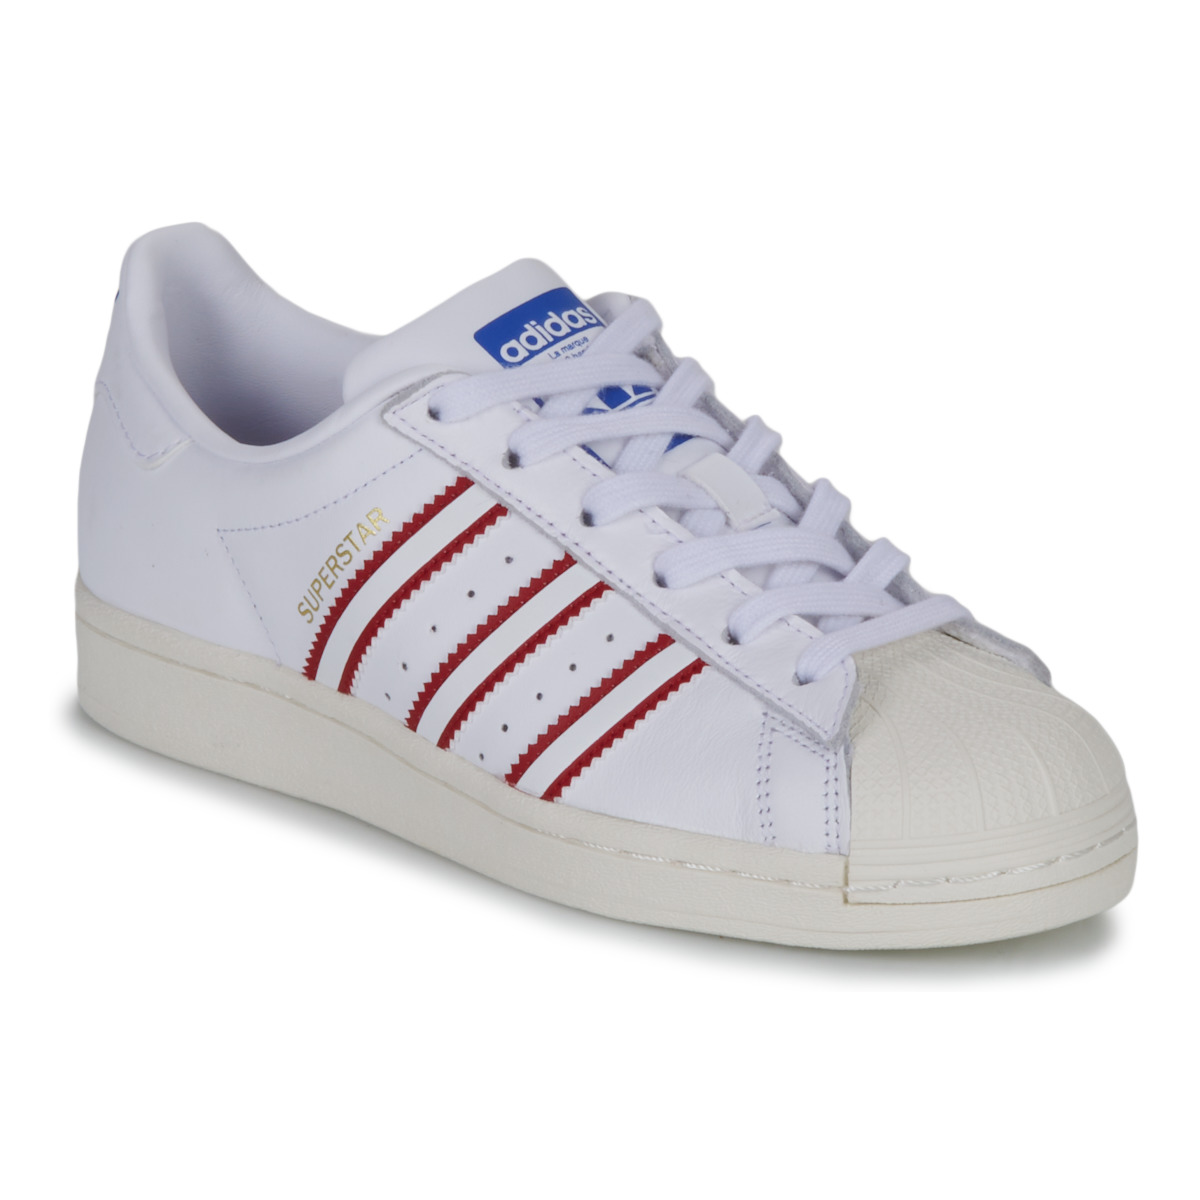 Παπούτσια Παιδί Χαμηλά Sneakers adidas Originals SUPERSTAR J Άσπρο / Red